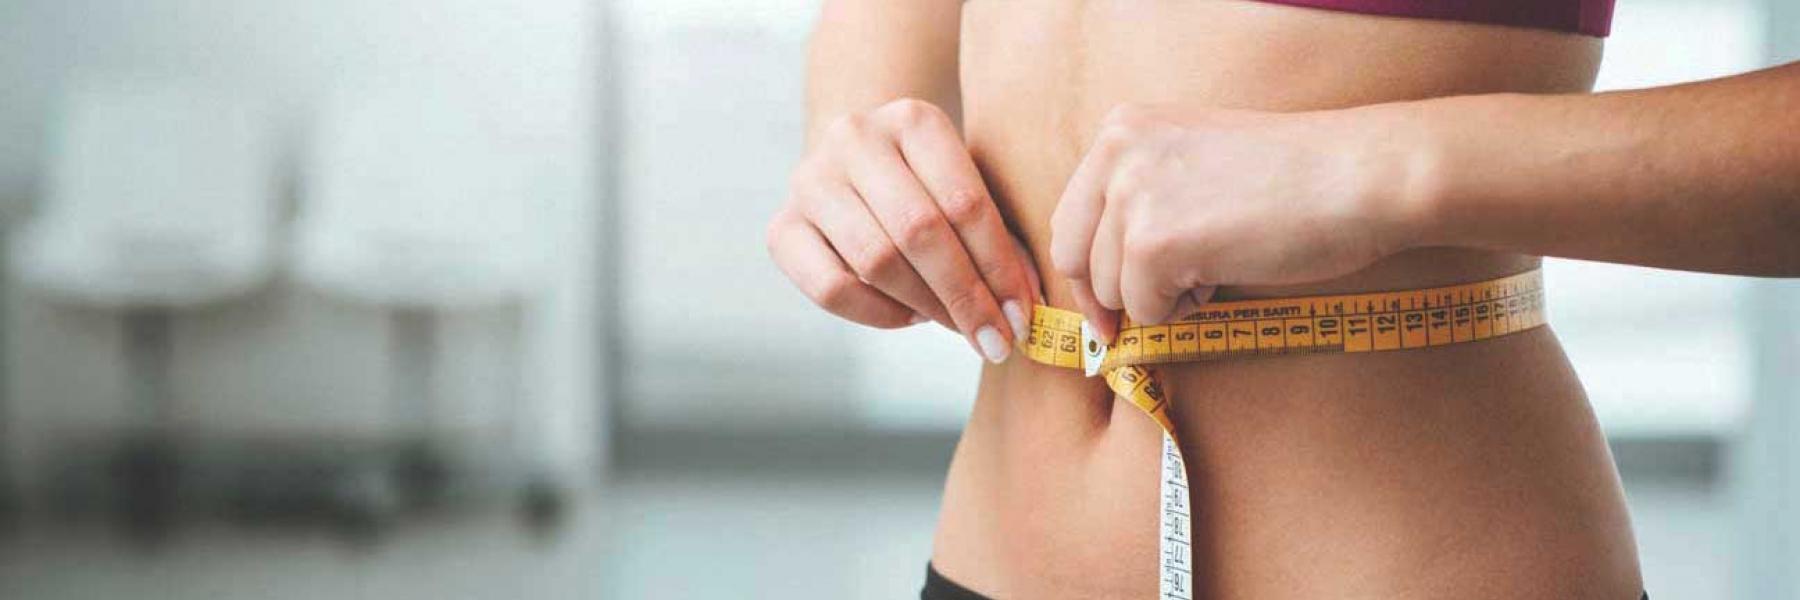 نصائح أساسية تعزز فقدان الوزن في الثلاثينات